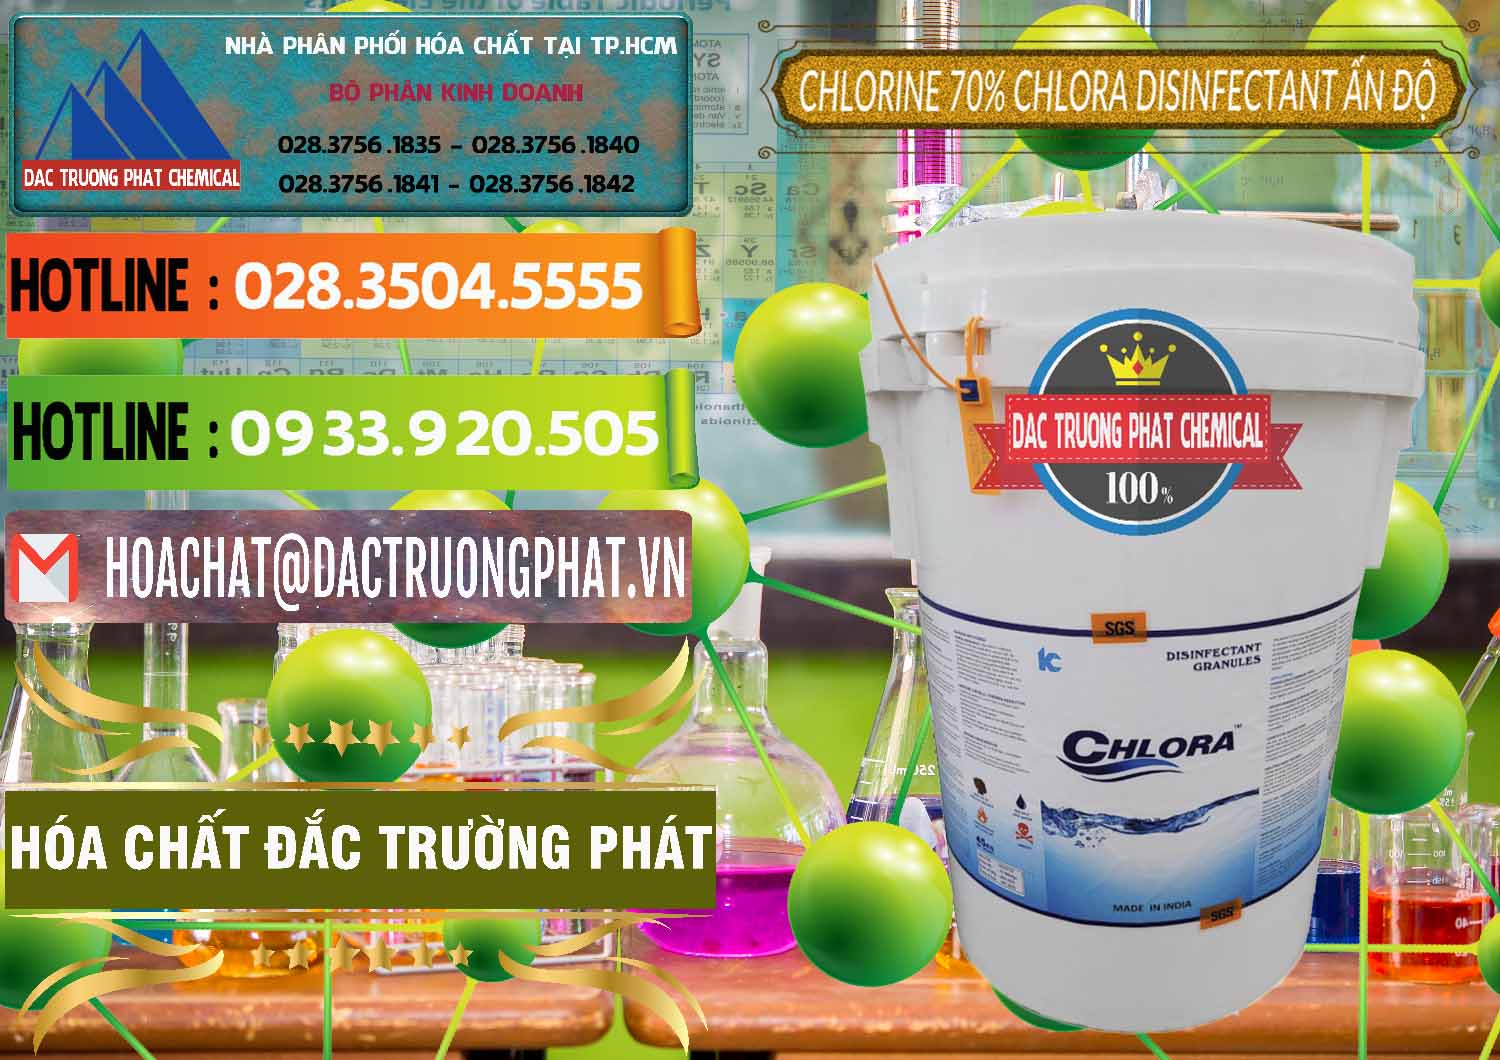 Công ty nhập khẩu & bán Chlorine – Clorin 70% Chlora Disinfectant Ấn Độ India - 0213 - Cty chuyên cung cấp _ nhập khẩu hóa chất tại TP.HCM - cungcaphoachat.com.vn